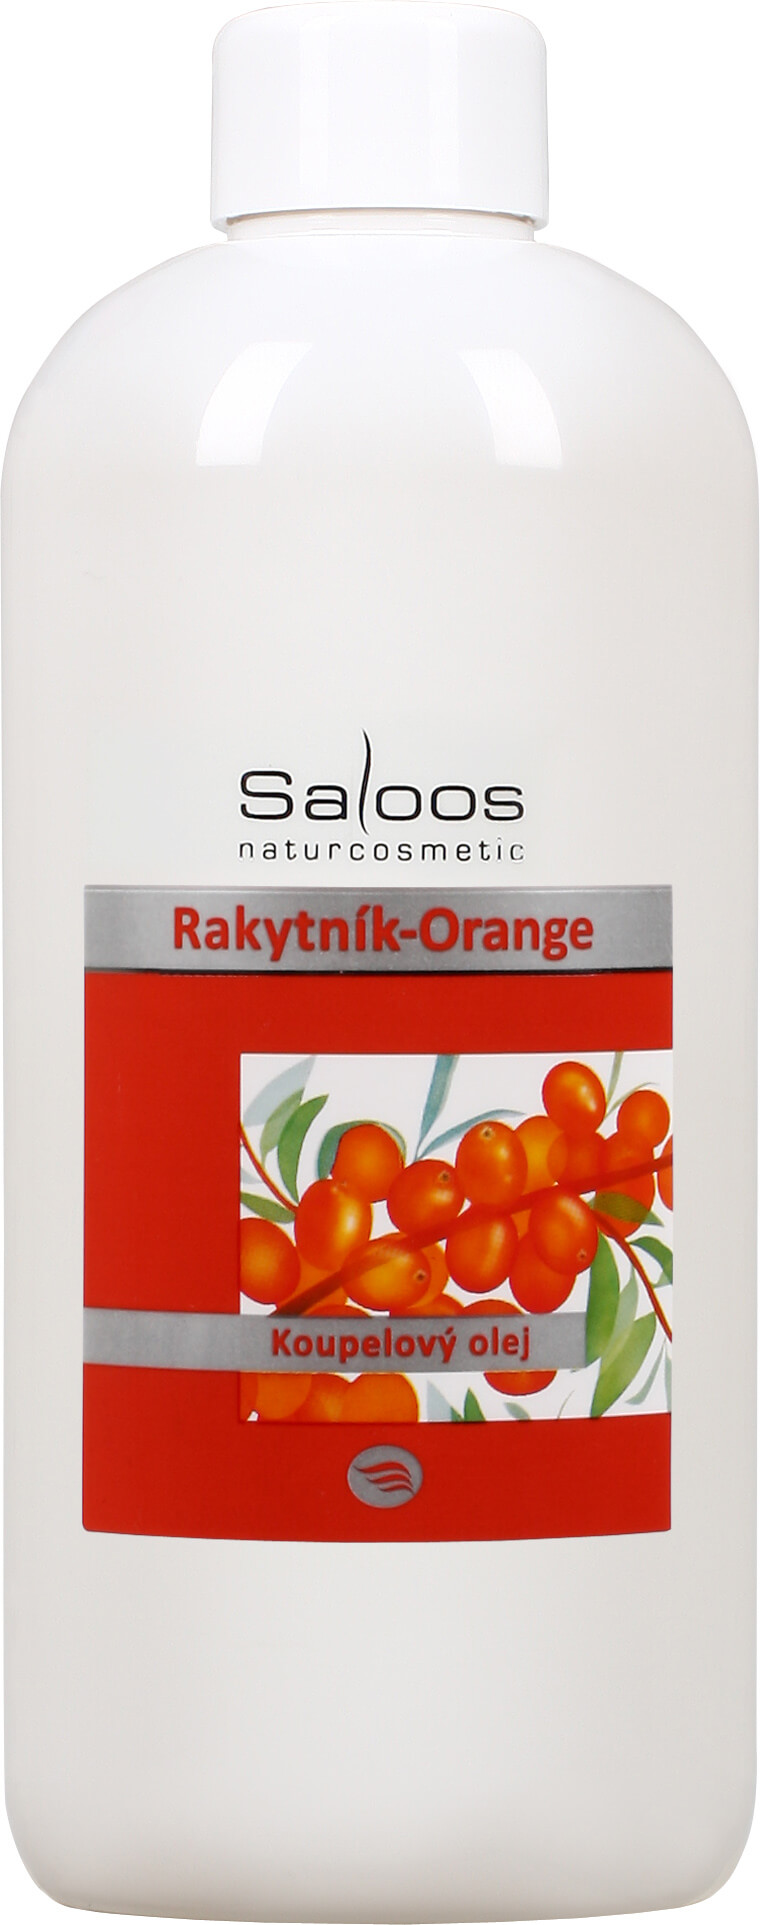 Zobrazit detail výrobku Saloos Koupelový olej - Rakytník-Orange 250 ml + 2 měsíce na vrácení zboží